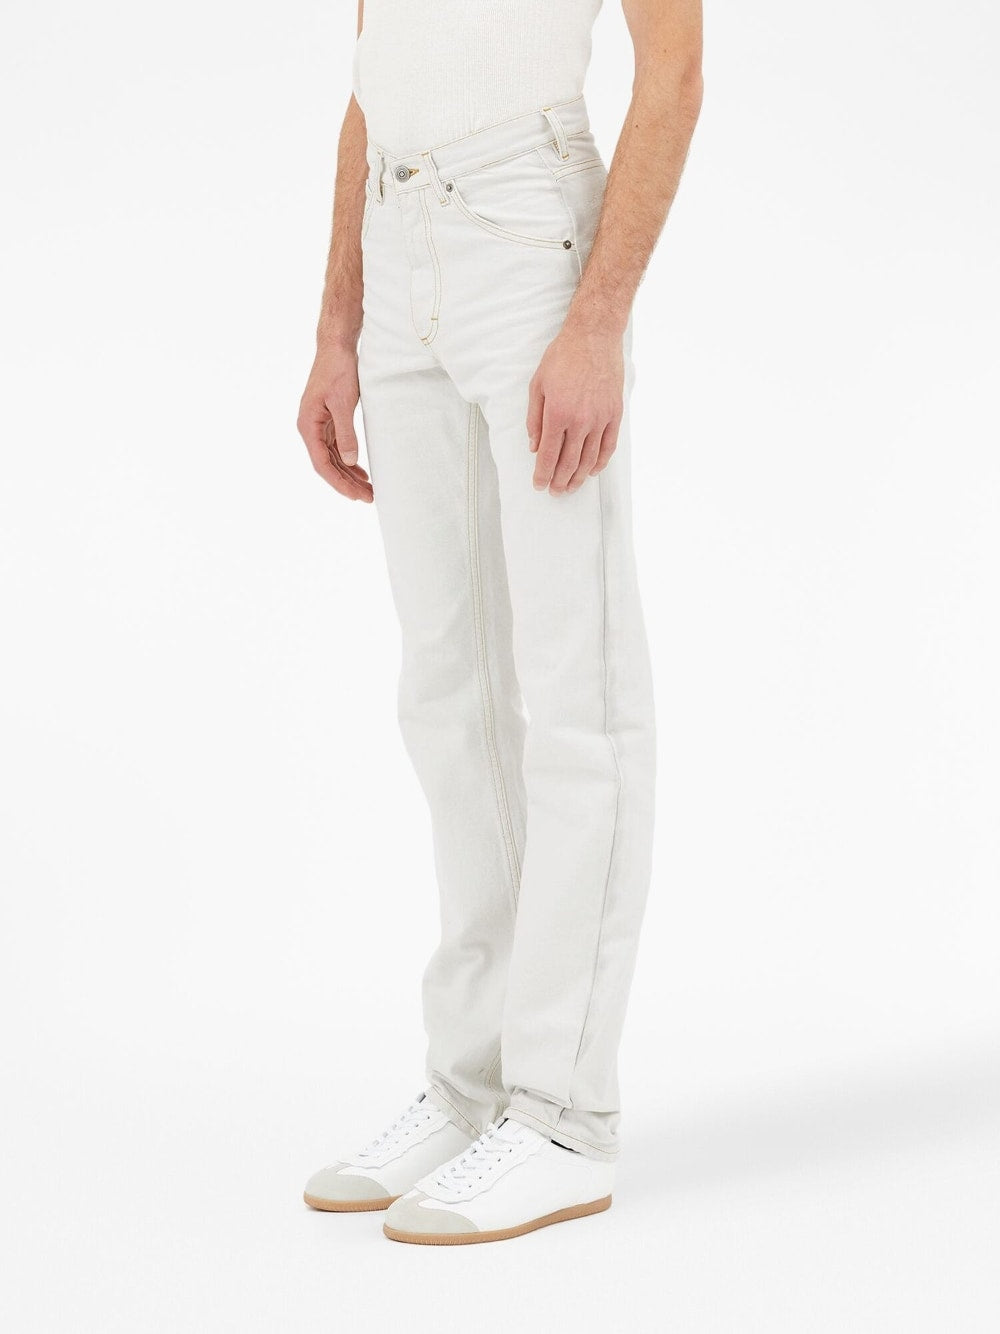 Maison Margiela Jeans White-men>clothing>jeans>classic-Maison Margiela-Urbanheer